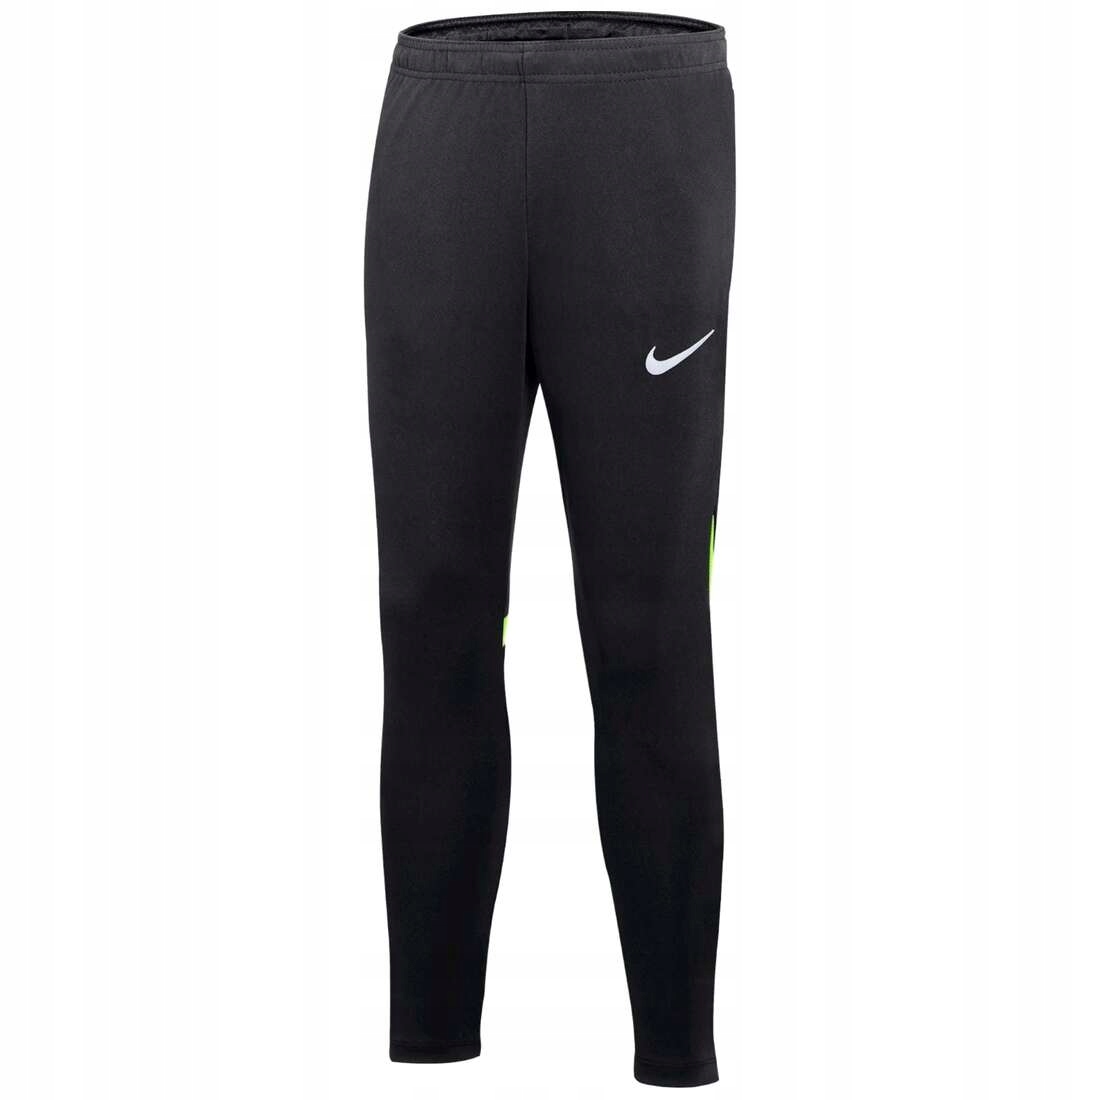 Spodnie Nike Youth Academy Pro Pant r. L